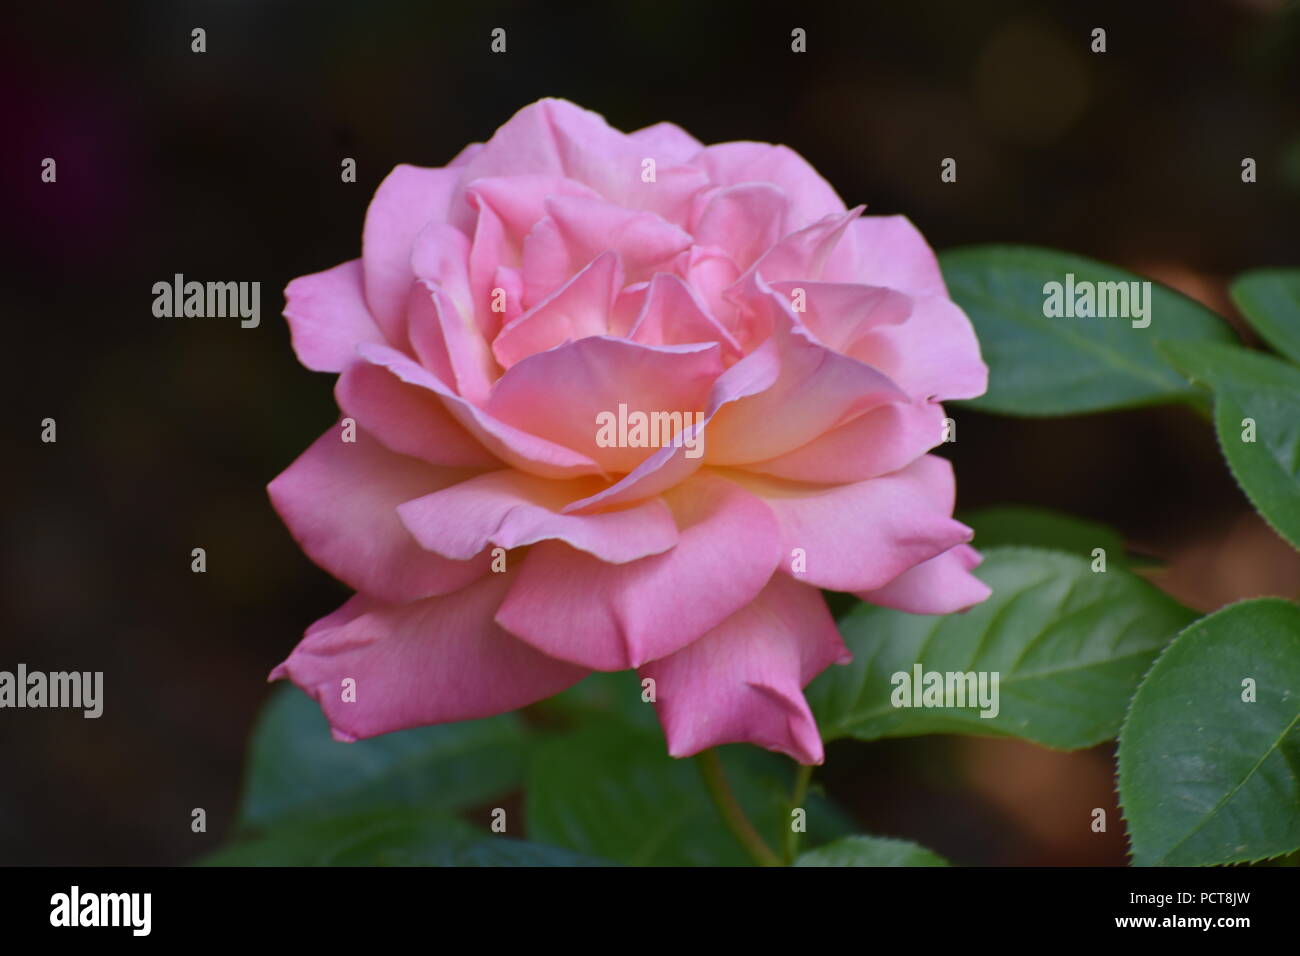 Unico grande rose con petali di rosa e foglie di colore verde scuro in uno sfondo scuro Foto Stock